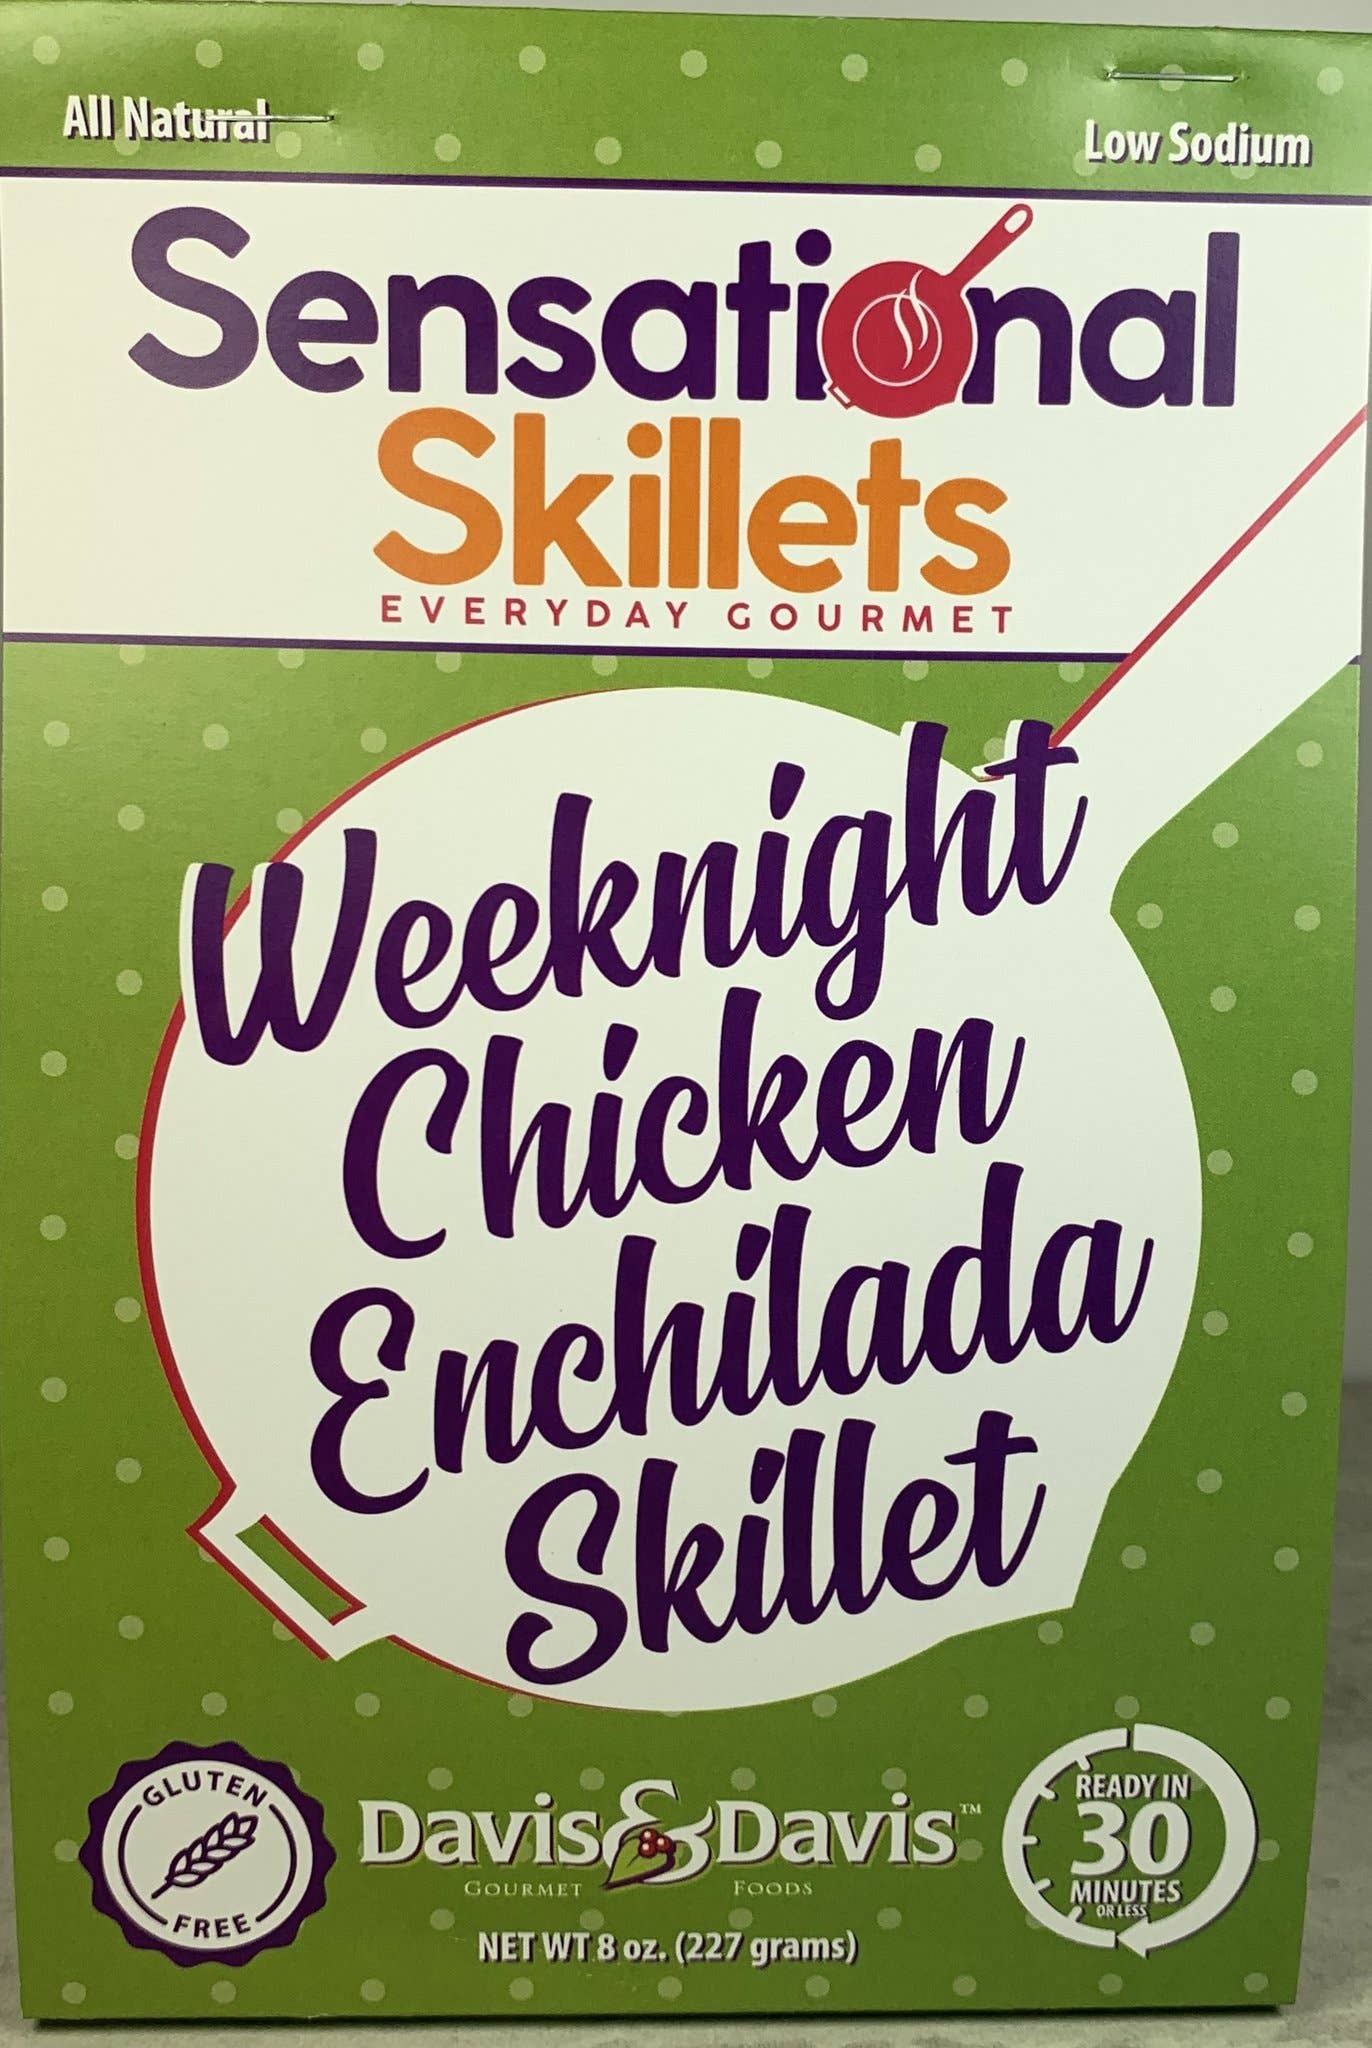 Weeknight Chicken Enchilada